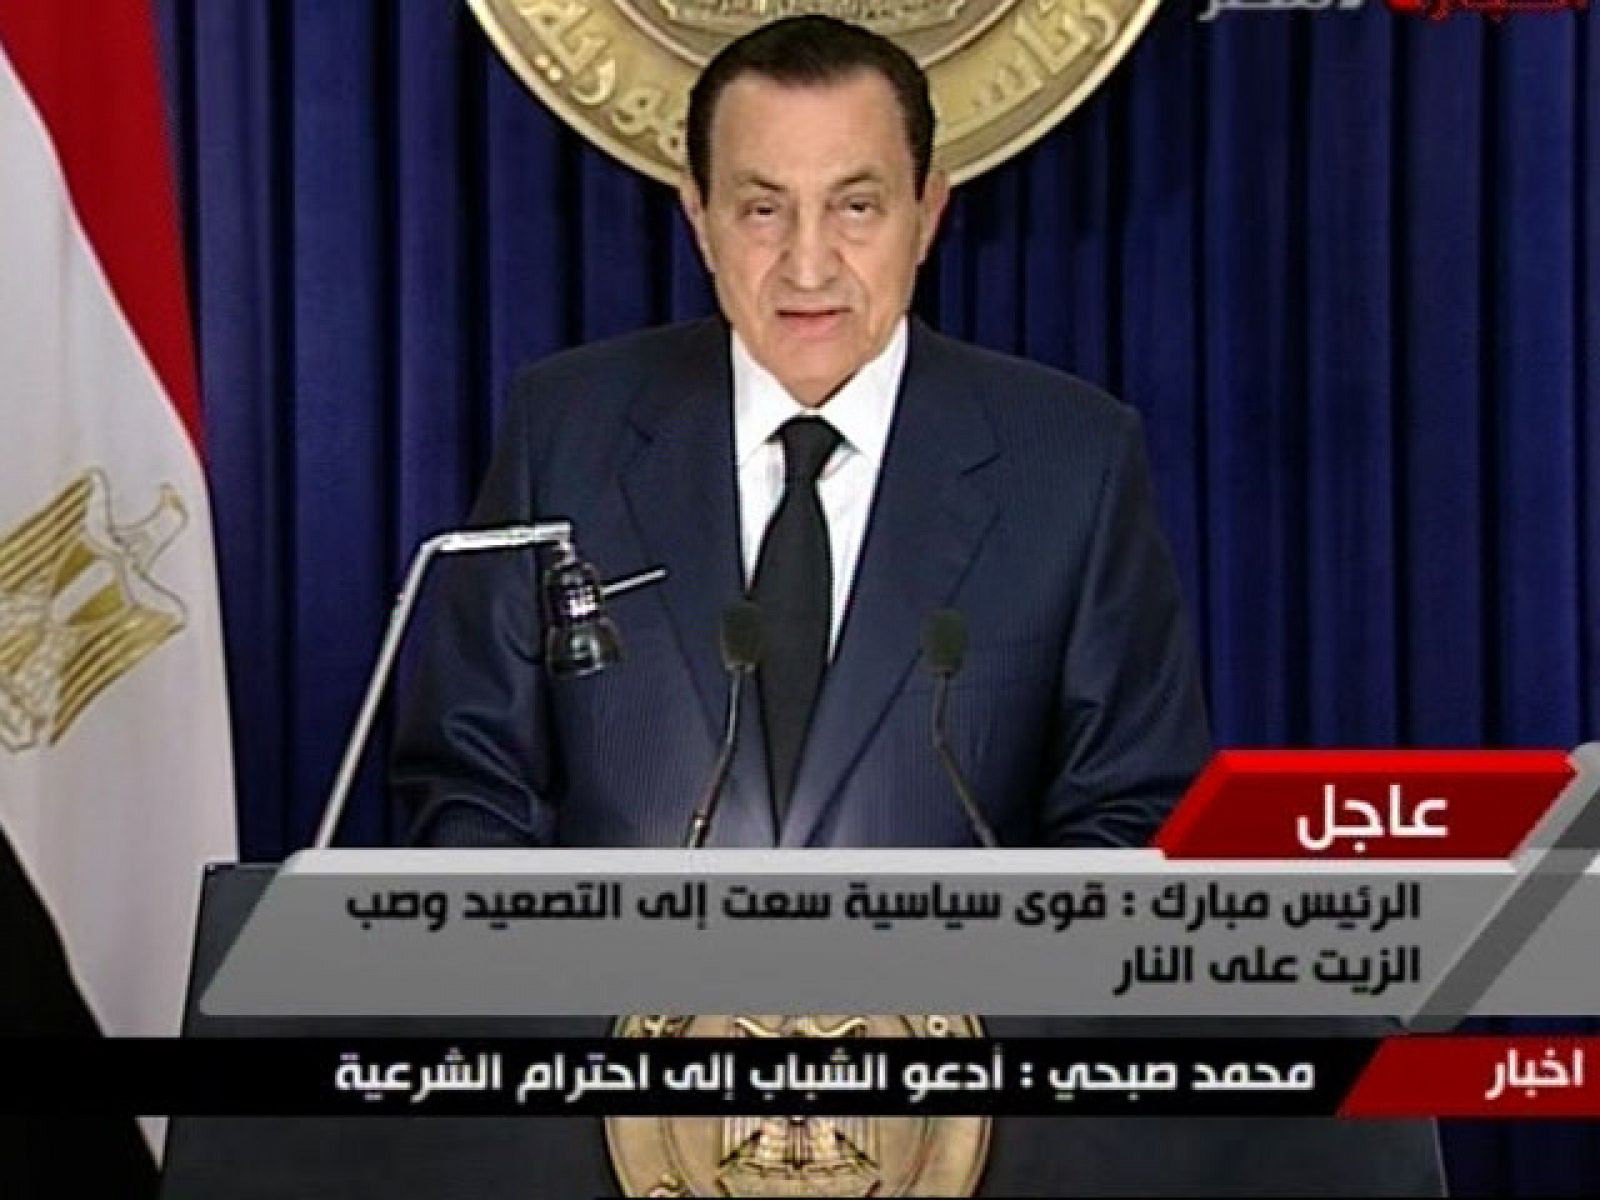 El presidente egipcio ha dicho que no se va a presentar a una nueva legislatura pero que se mantendrá en su cargo hasta la nueva cita electoral. También ha asegurado que hará lo necesario para mantener la seguridad del país.